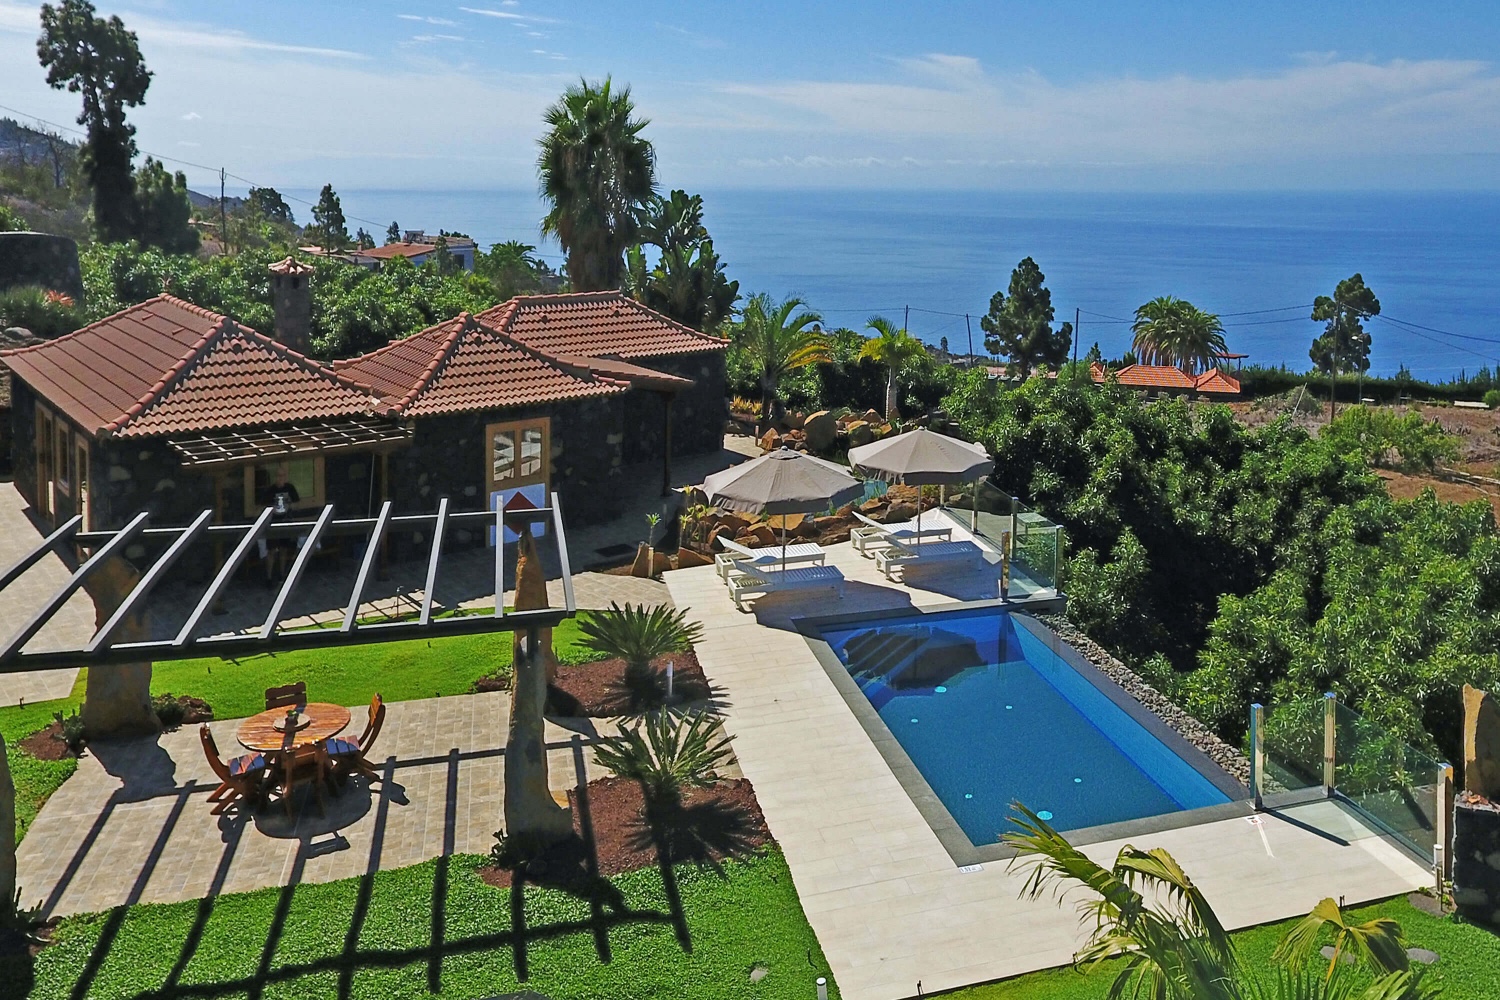 Charmante maison en pierre avec grande piscine, belle terrasse avec vue sur mer, coin barbecue et magnifique jardin de palmiers et cactus